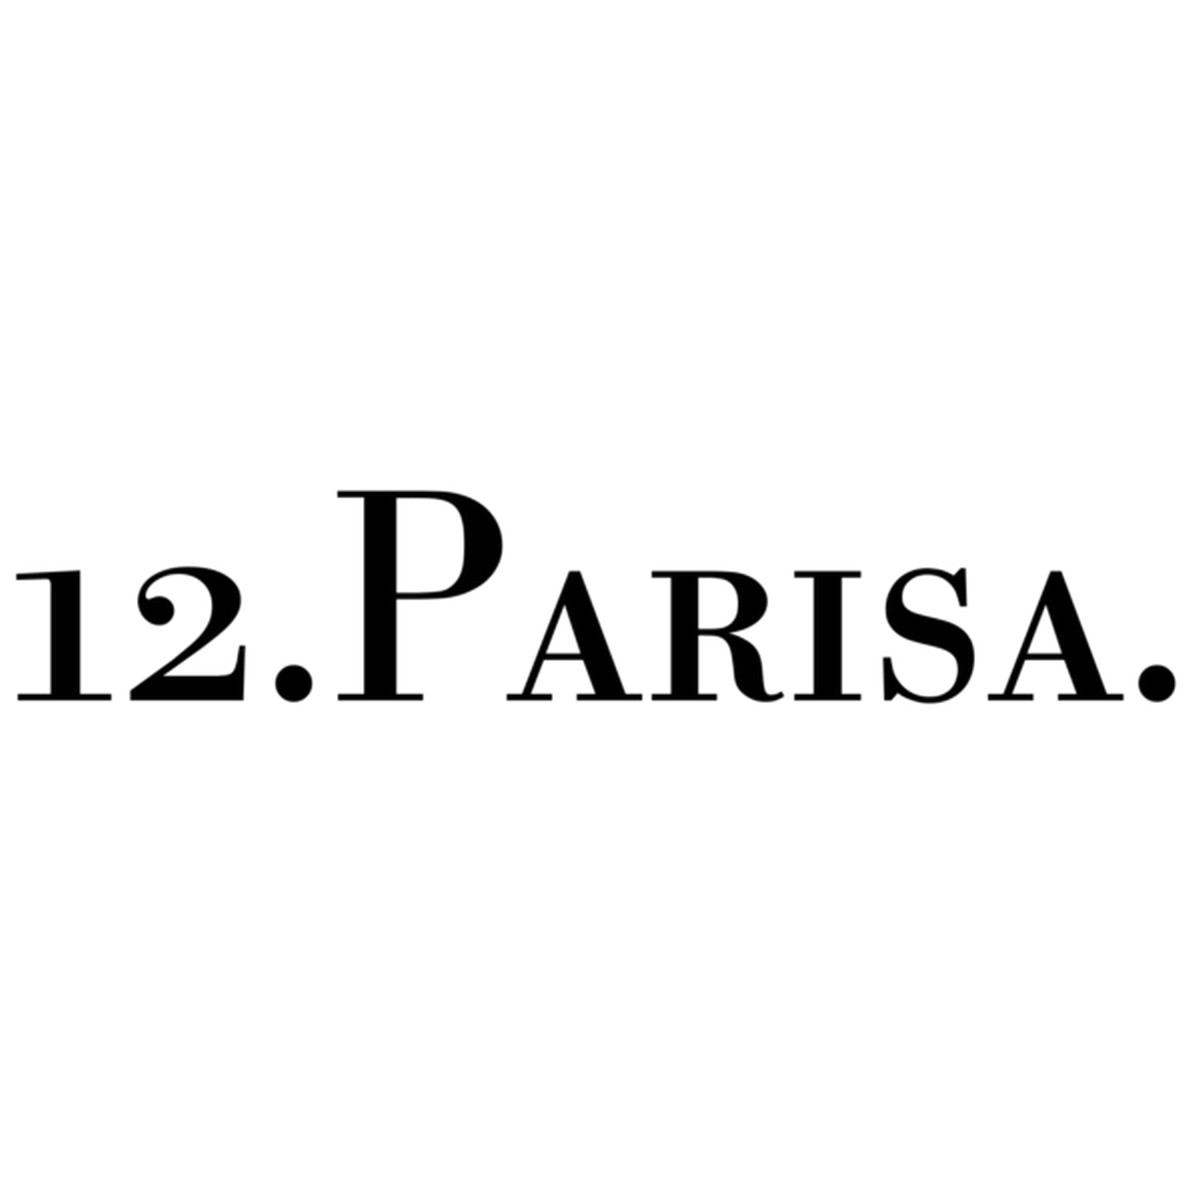 12.PARISA